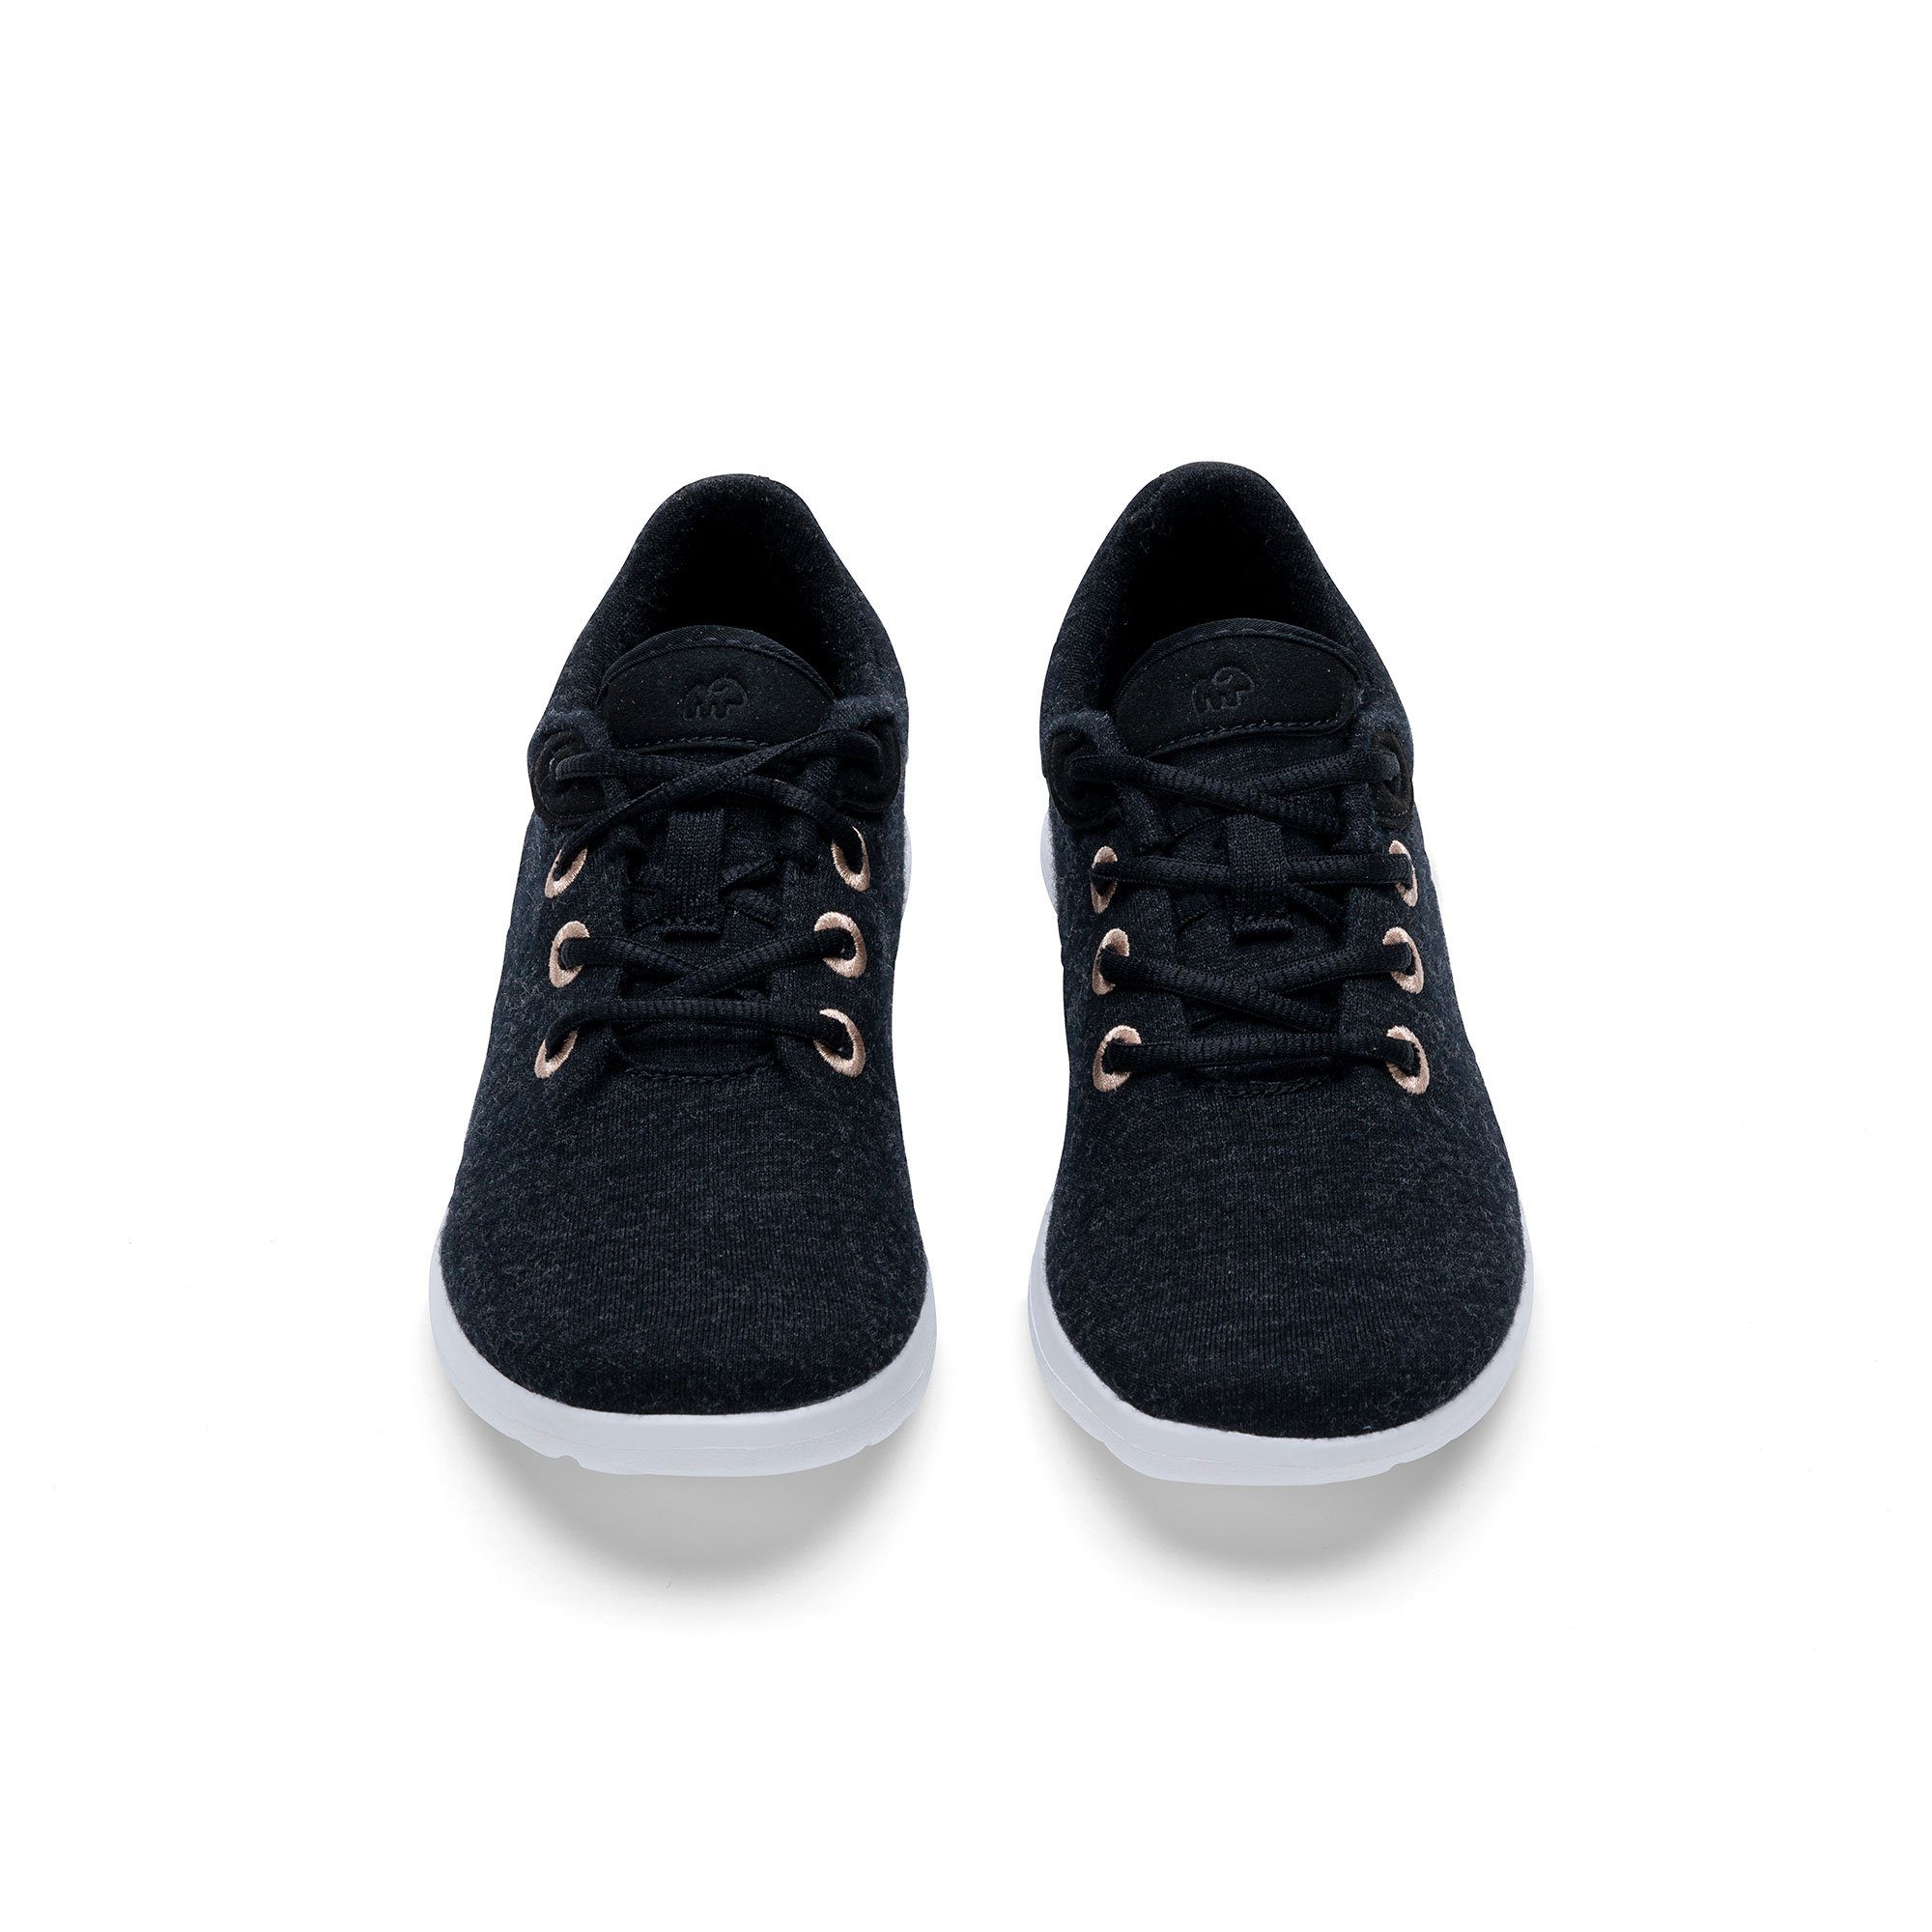 Funktion Merinowolle Atmungsaktiver & Eleganter Sneaker schwarz - merinos Schuh Slip-On mit weißer schwarz-weiß aus merinoshoes.de Damenschuh